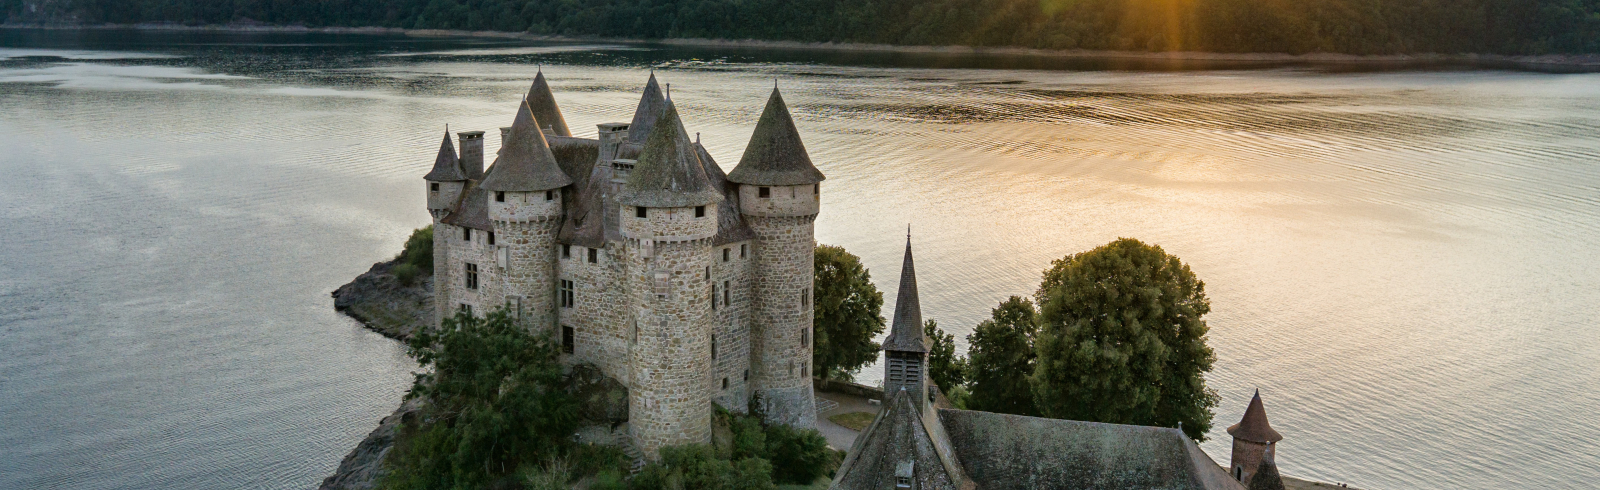 France, Cantal (15), Lanobre, Château de Val, château fort du XIIIe siècle (vue aérienne) // France, Cantal, Lanobre, Château de Val, castle of the thirteenth century (aerial view)